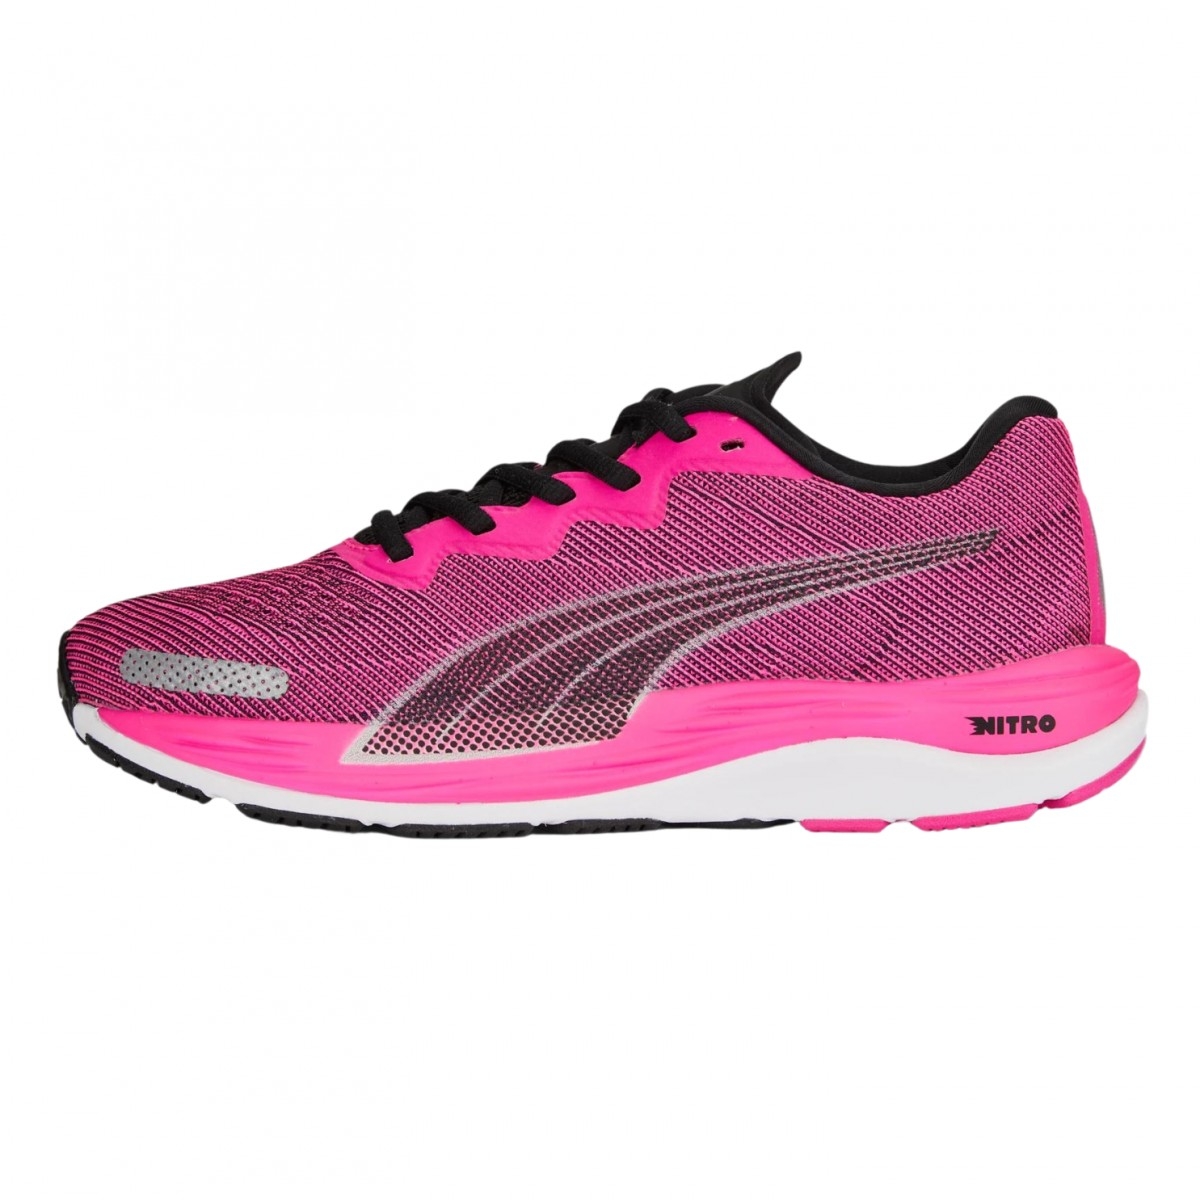 puma scarpe velocity nitro 2 rosa , taglia 40,5 - eur nero donna